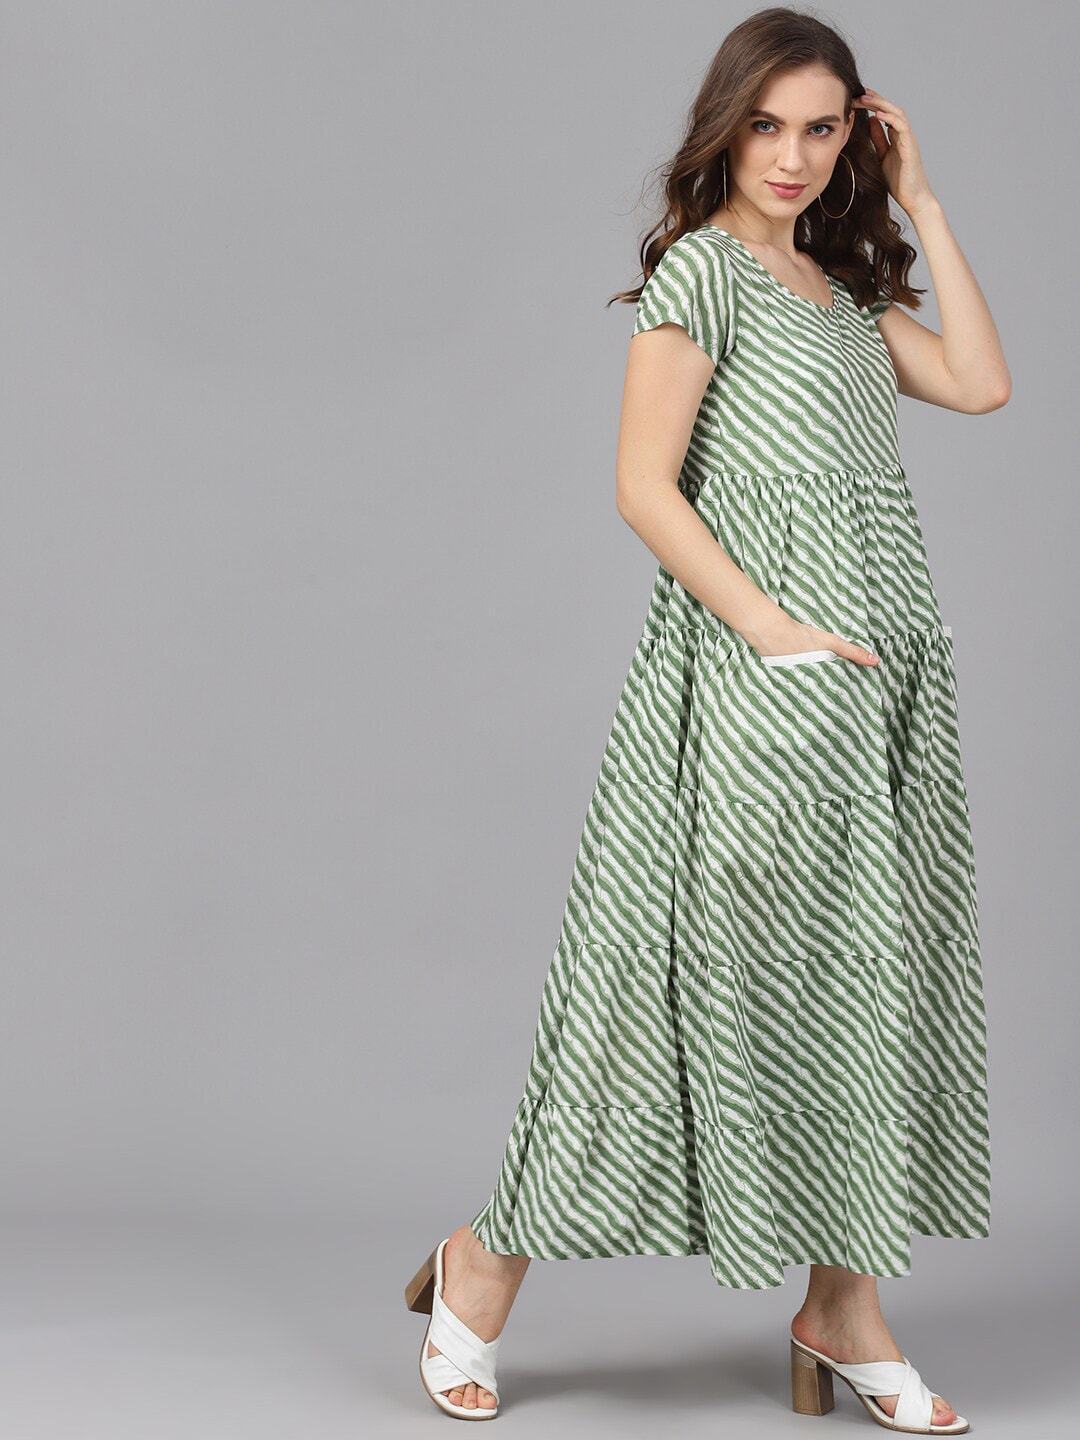 Women's  Green & White Striped Maxi Dress - AKS